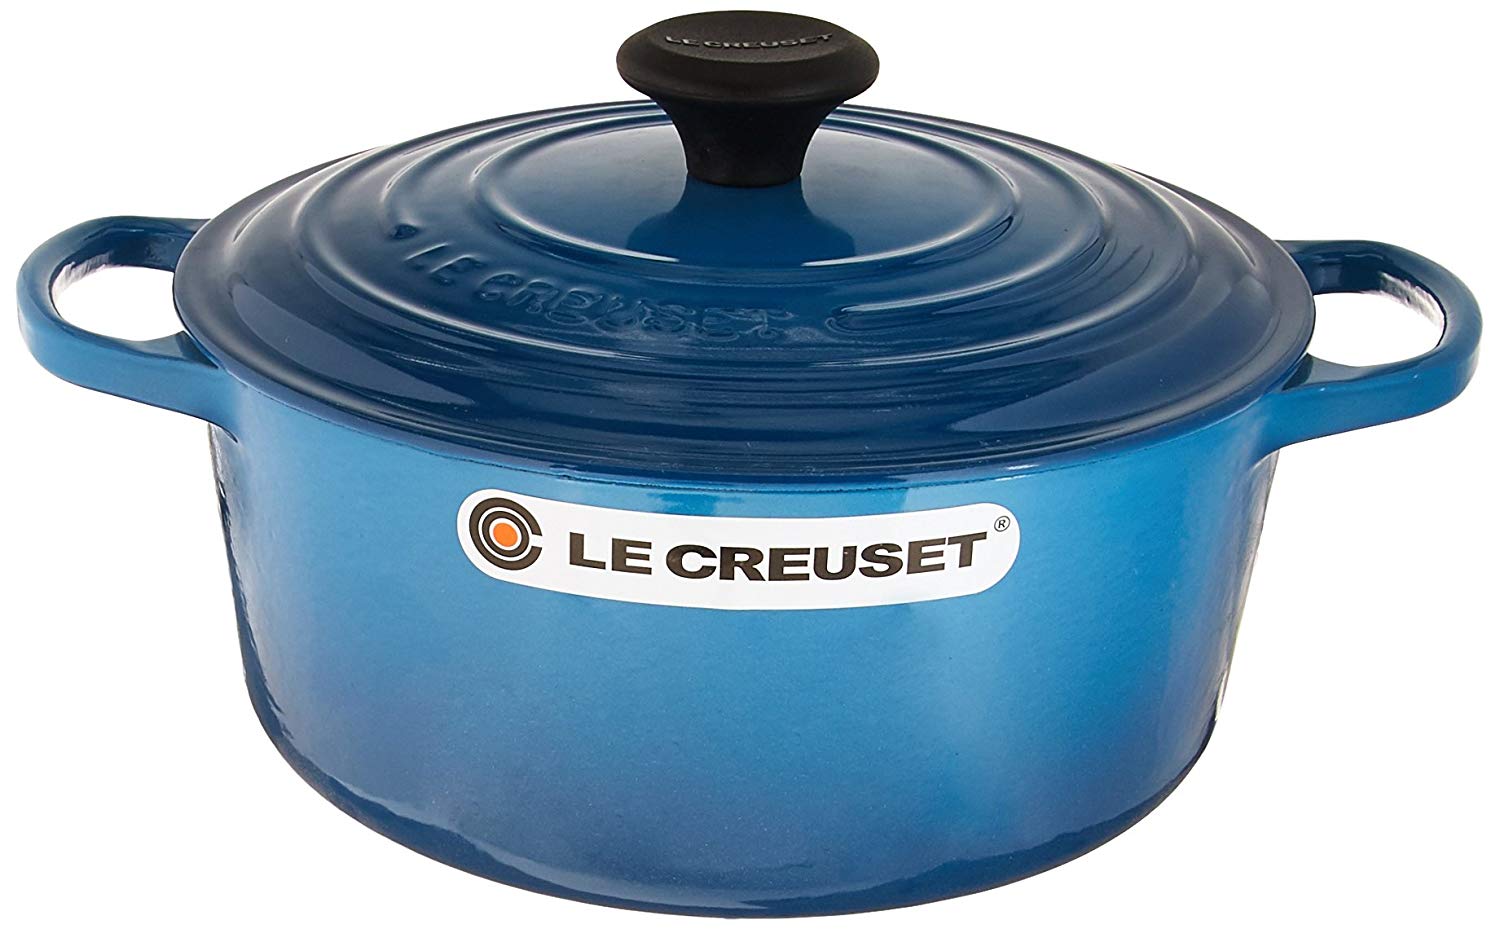 Le Creuset 7.25-Quart Signature Cast Iron Round Dutch Oven - Caribbean